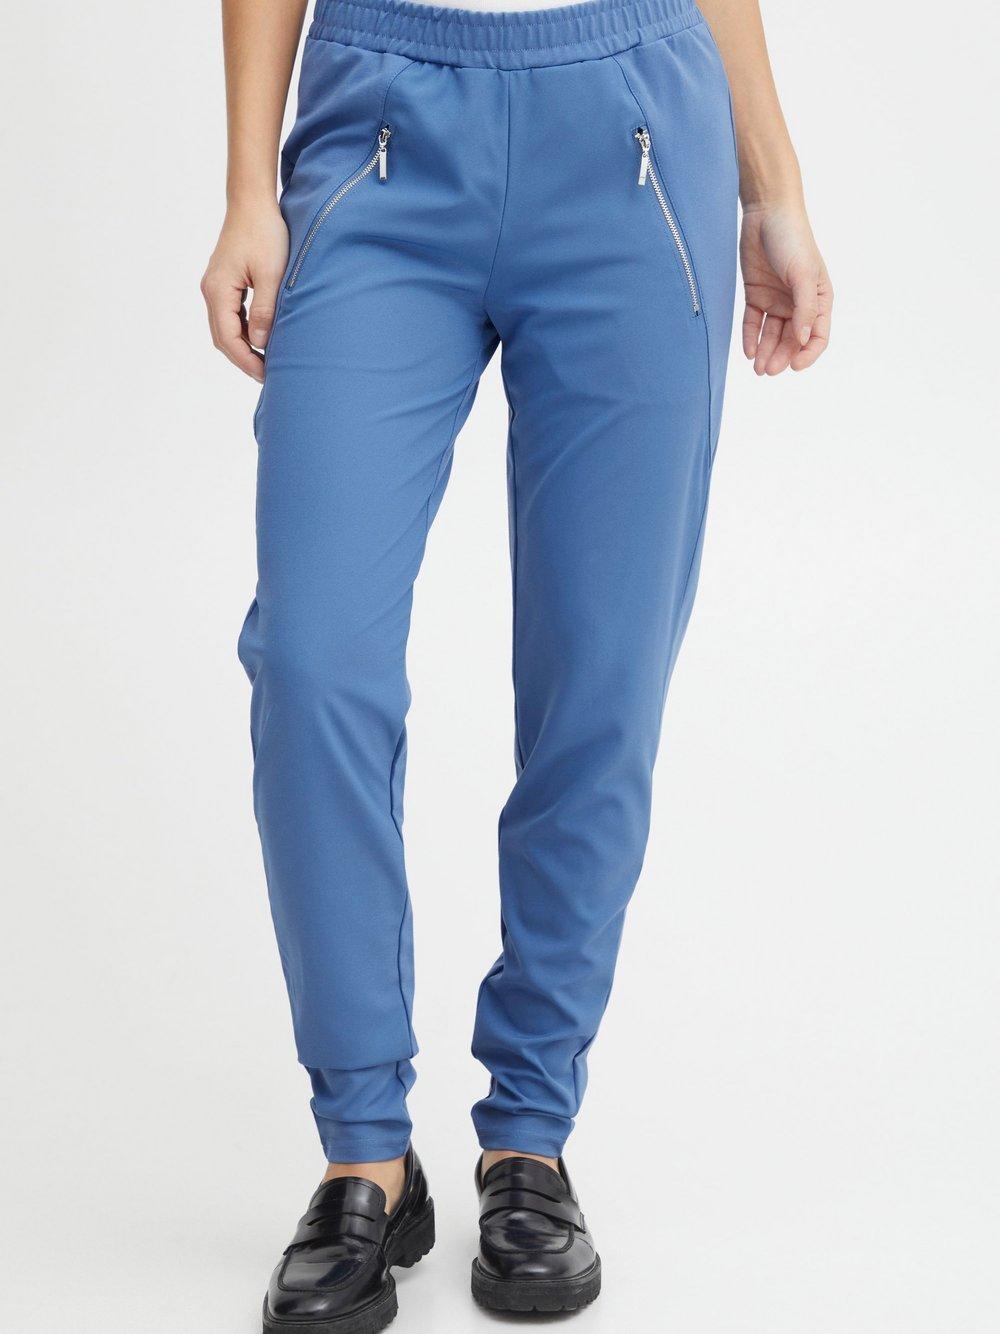 PULZ Jeans Stoffhose Damen, blau von Pulz Jeans